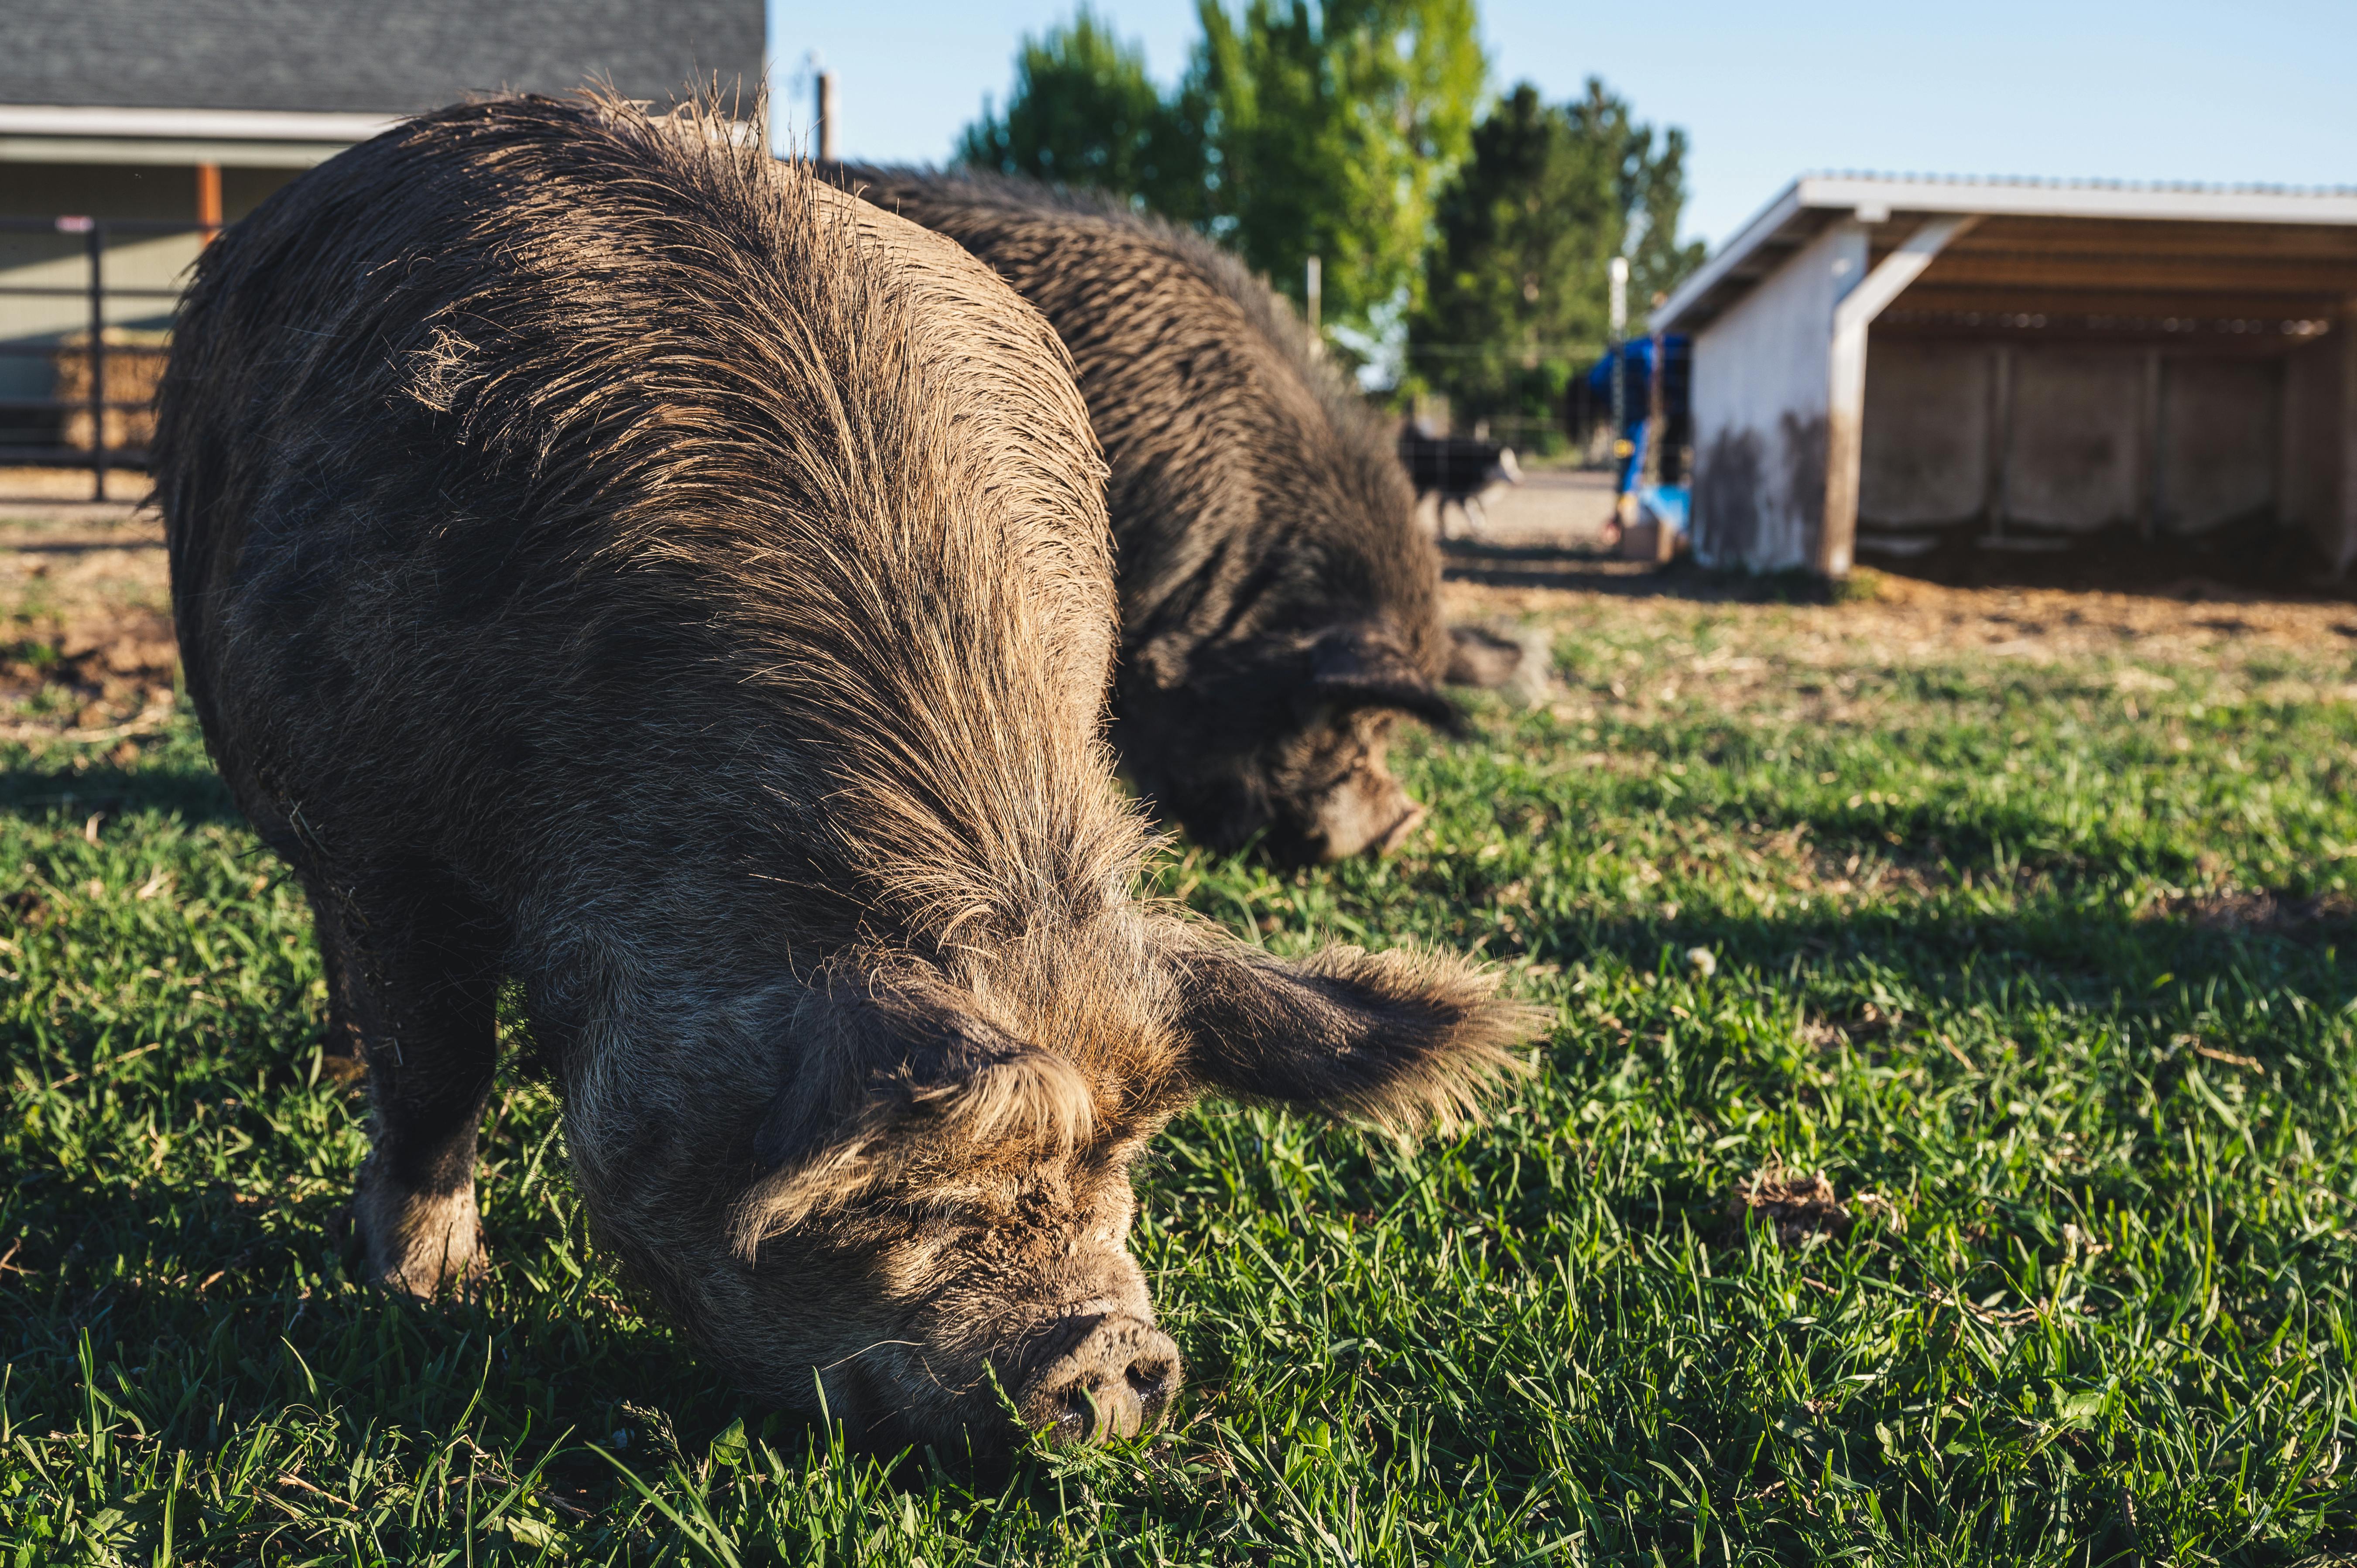 cute kunekune pigs pasturing on grassy field in farm